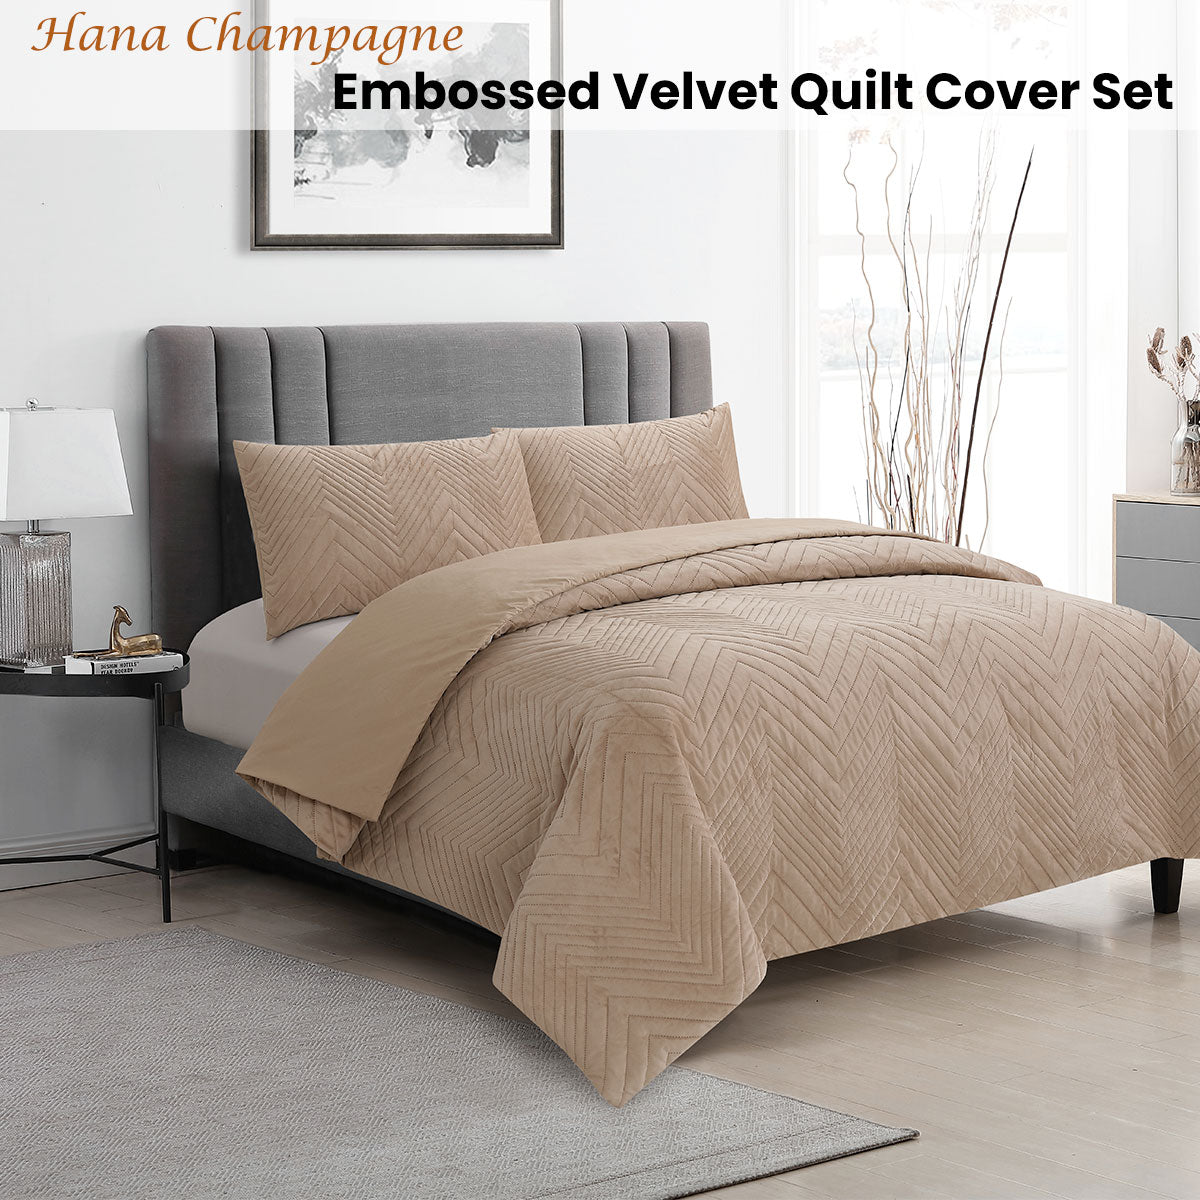 Ardor Hana Champagne Embossed Velvet Quilt Cover Set Queen